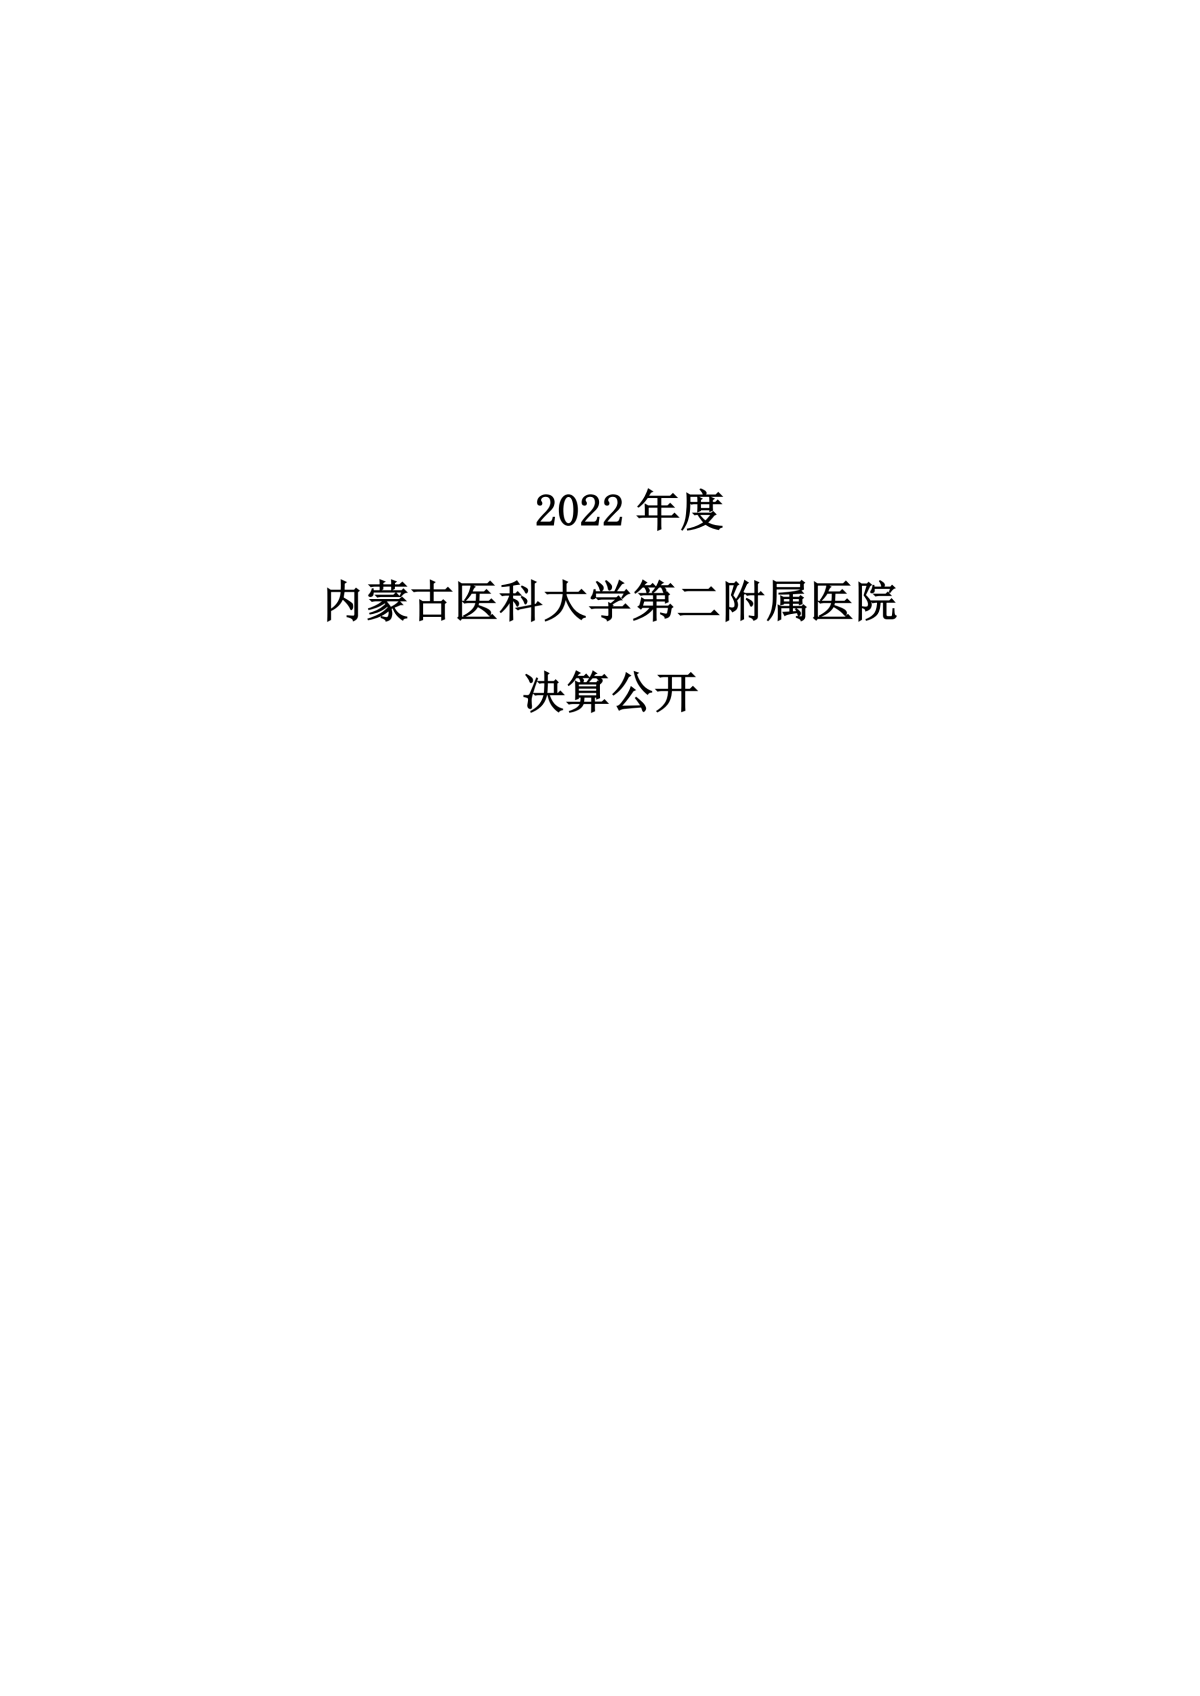 2022年度威尼斯wnsr888公开报告_00.png